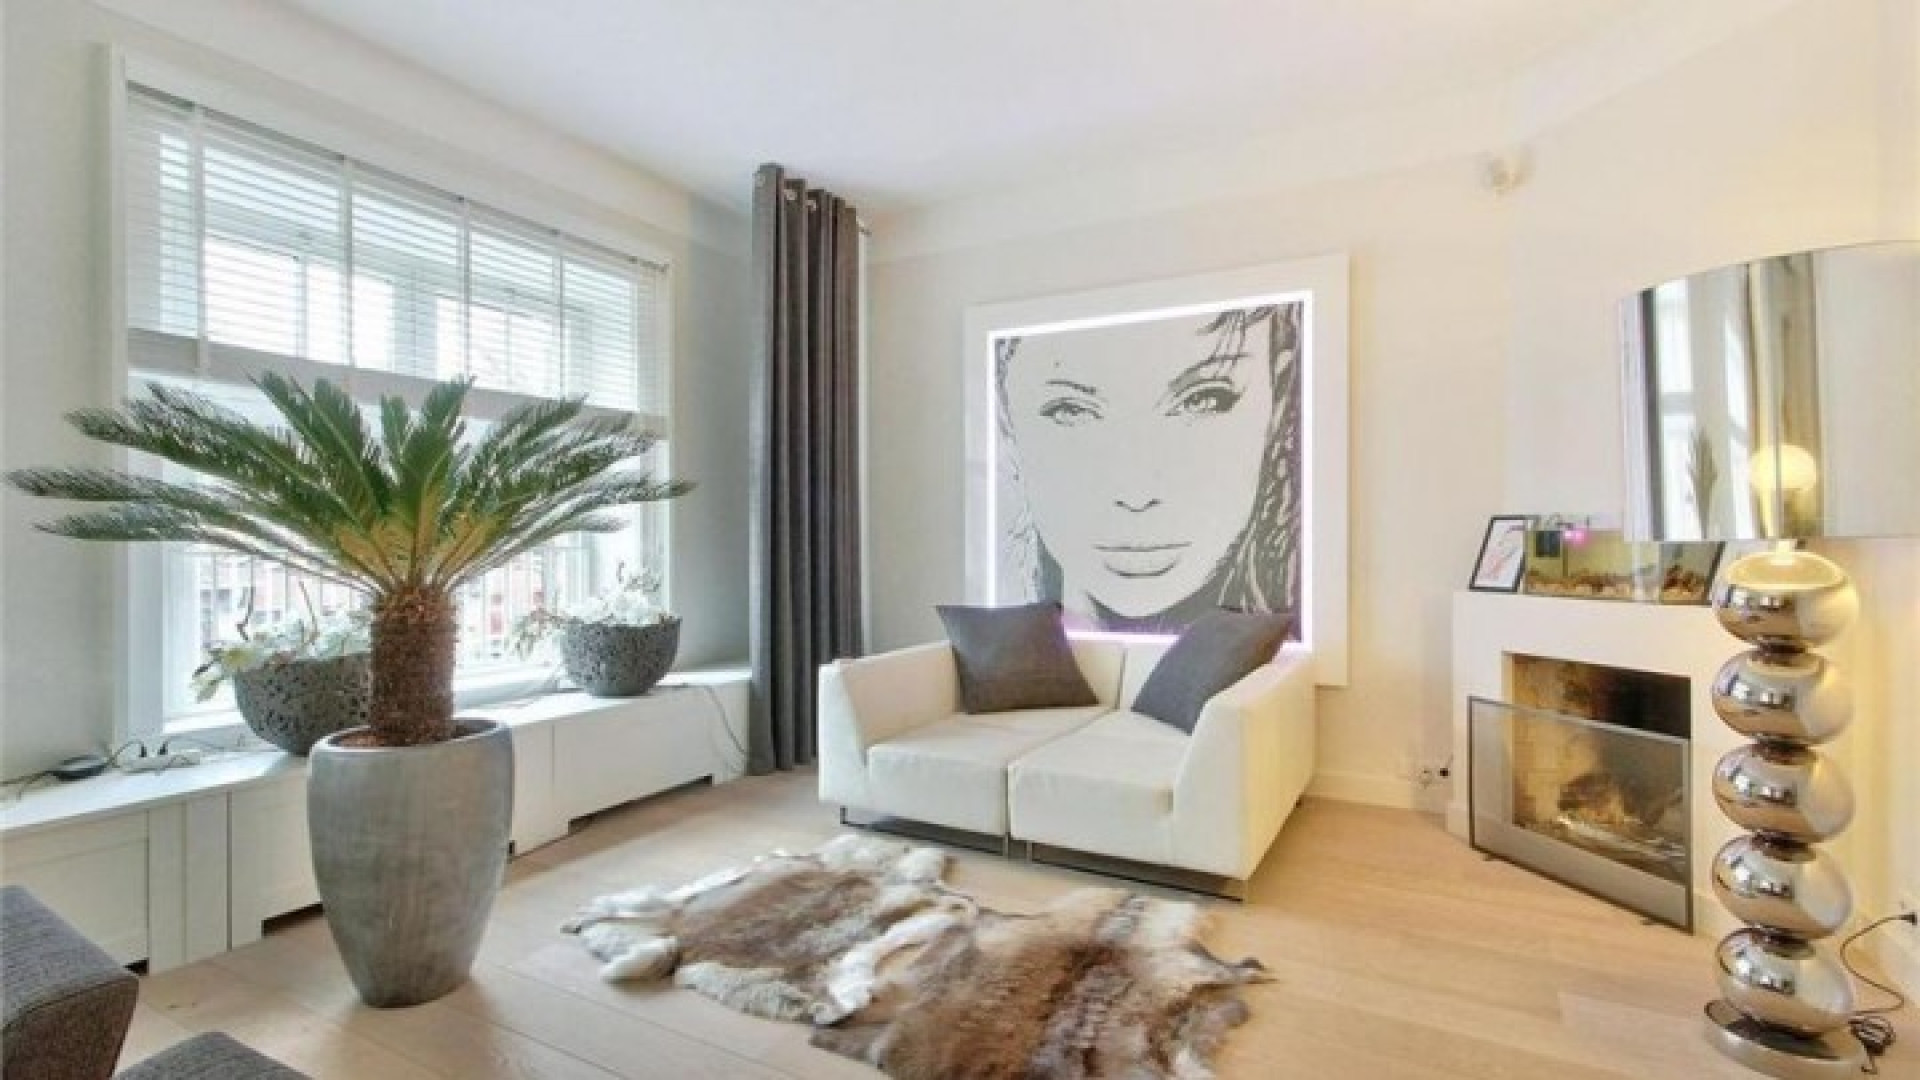 Nicolette KLuijver verkoopt eindelijk haar huis in Amsterdam Zuid. Zie foto's 4